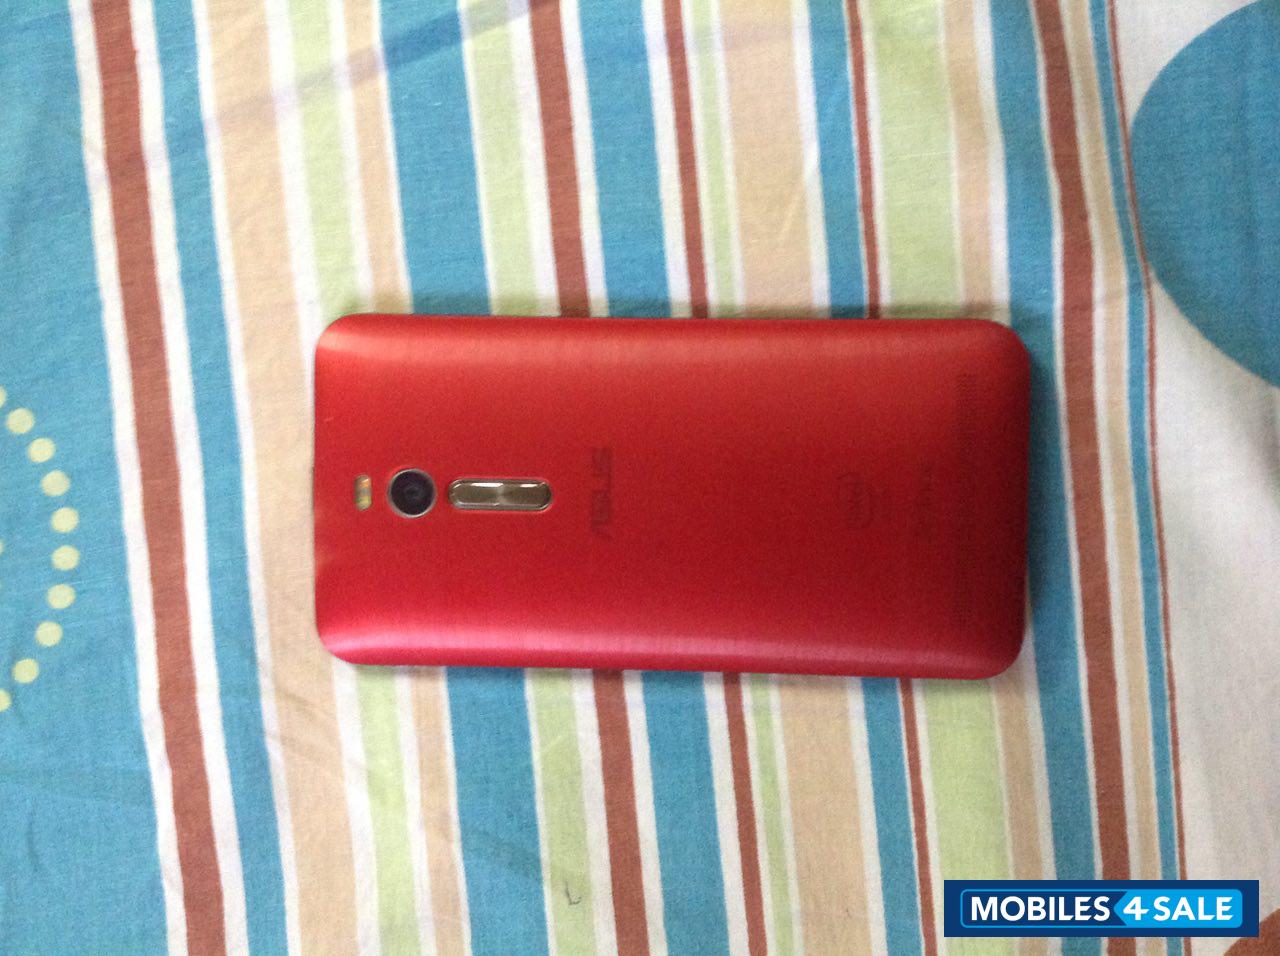 Red Asus Zenfone 2 ZE551ML